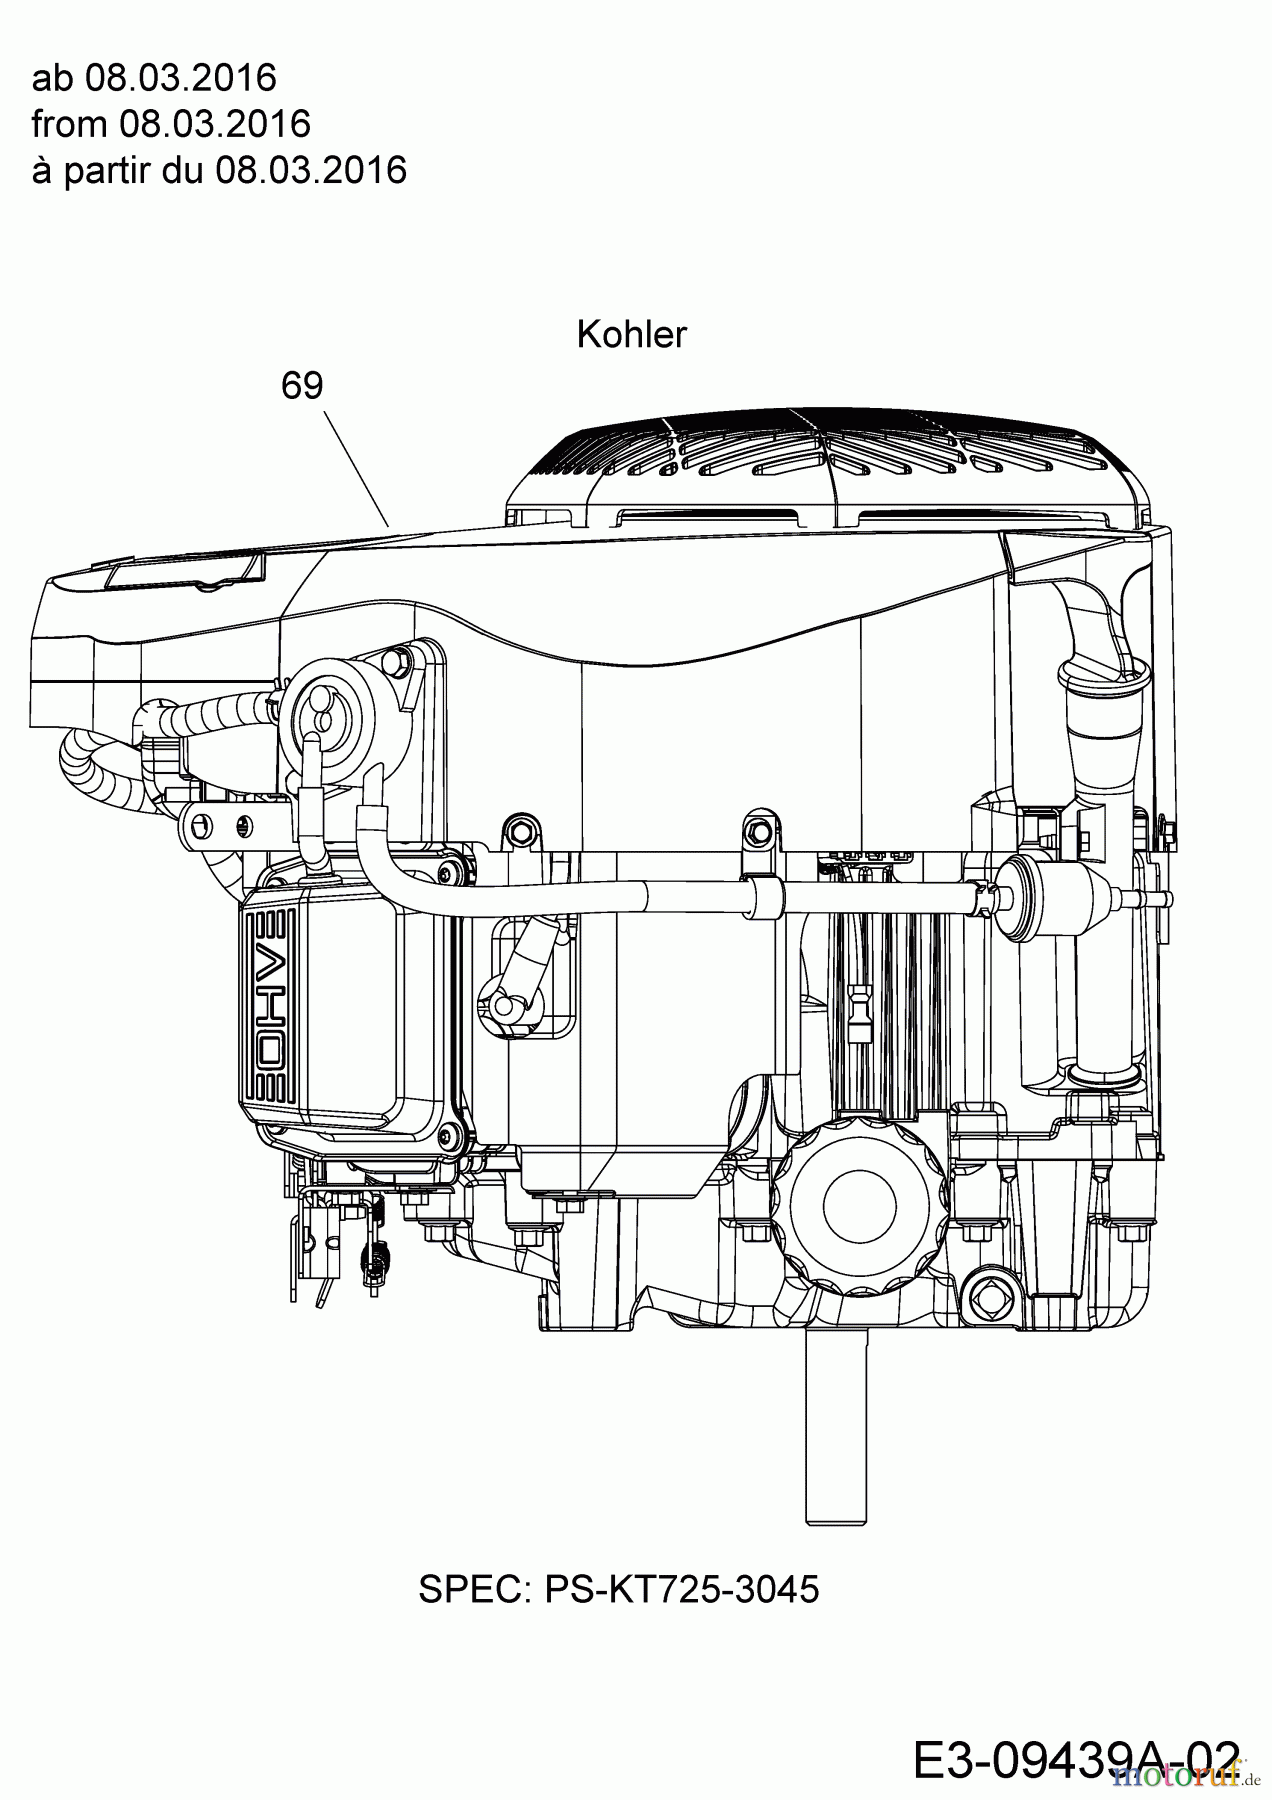  Massey Ferguson Rasentraktoren MF 46-22 SH 13HP93GT695  (2016) Motor Kohler ab 08.03.2016